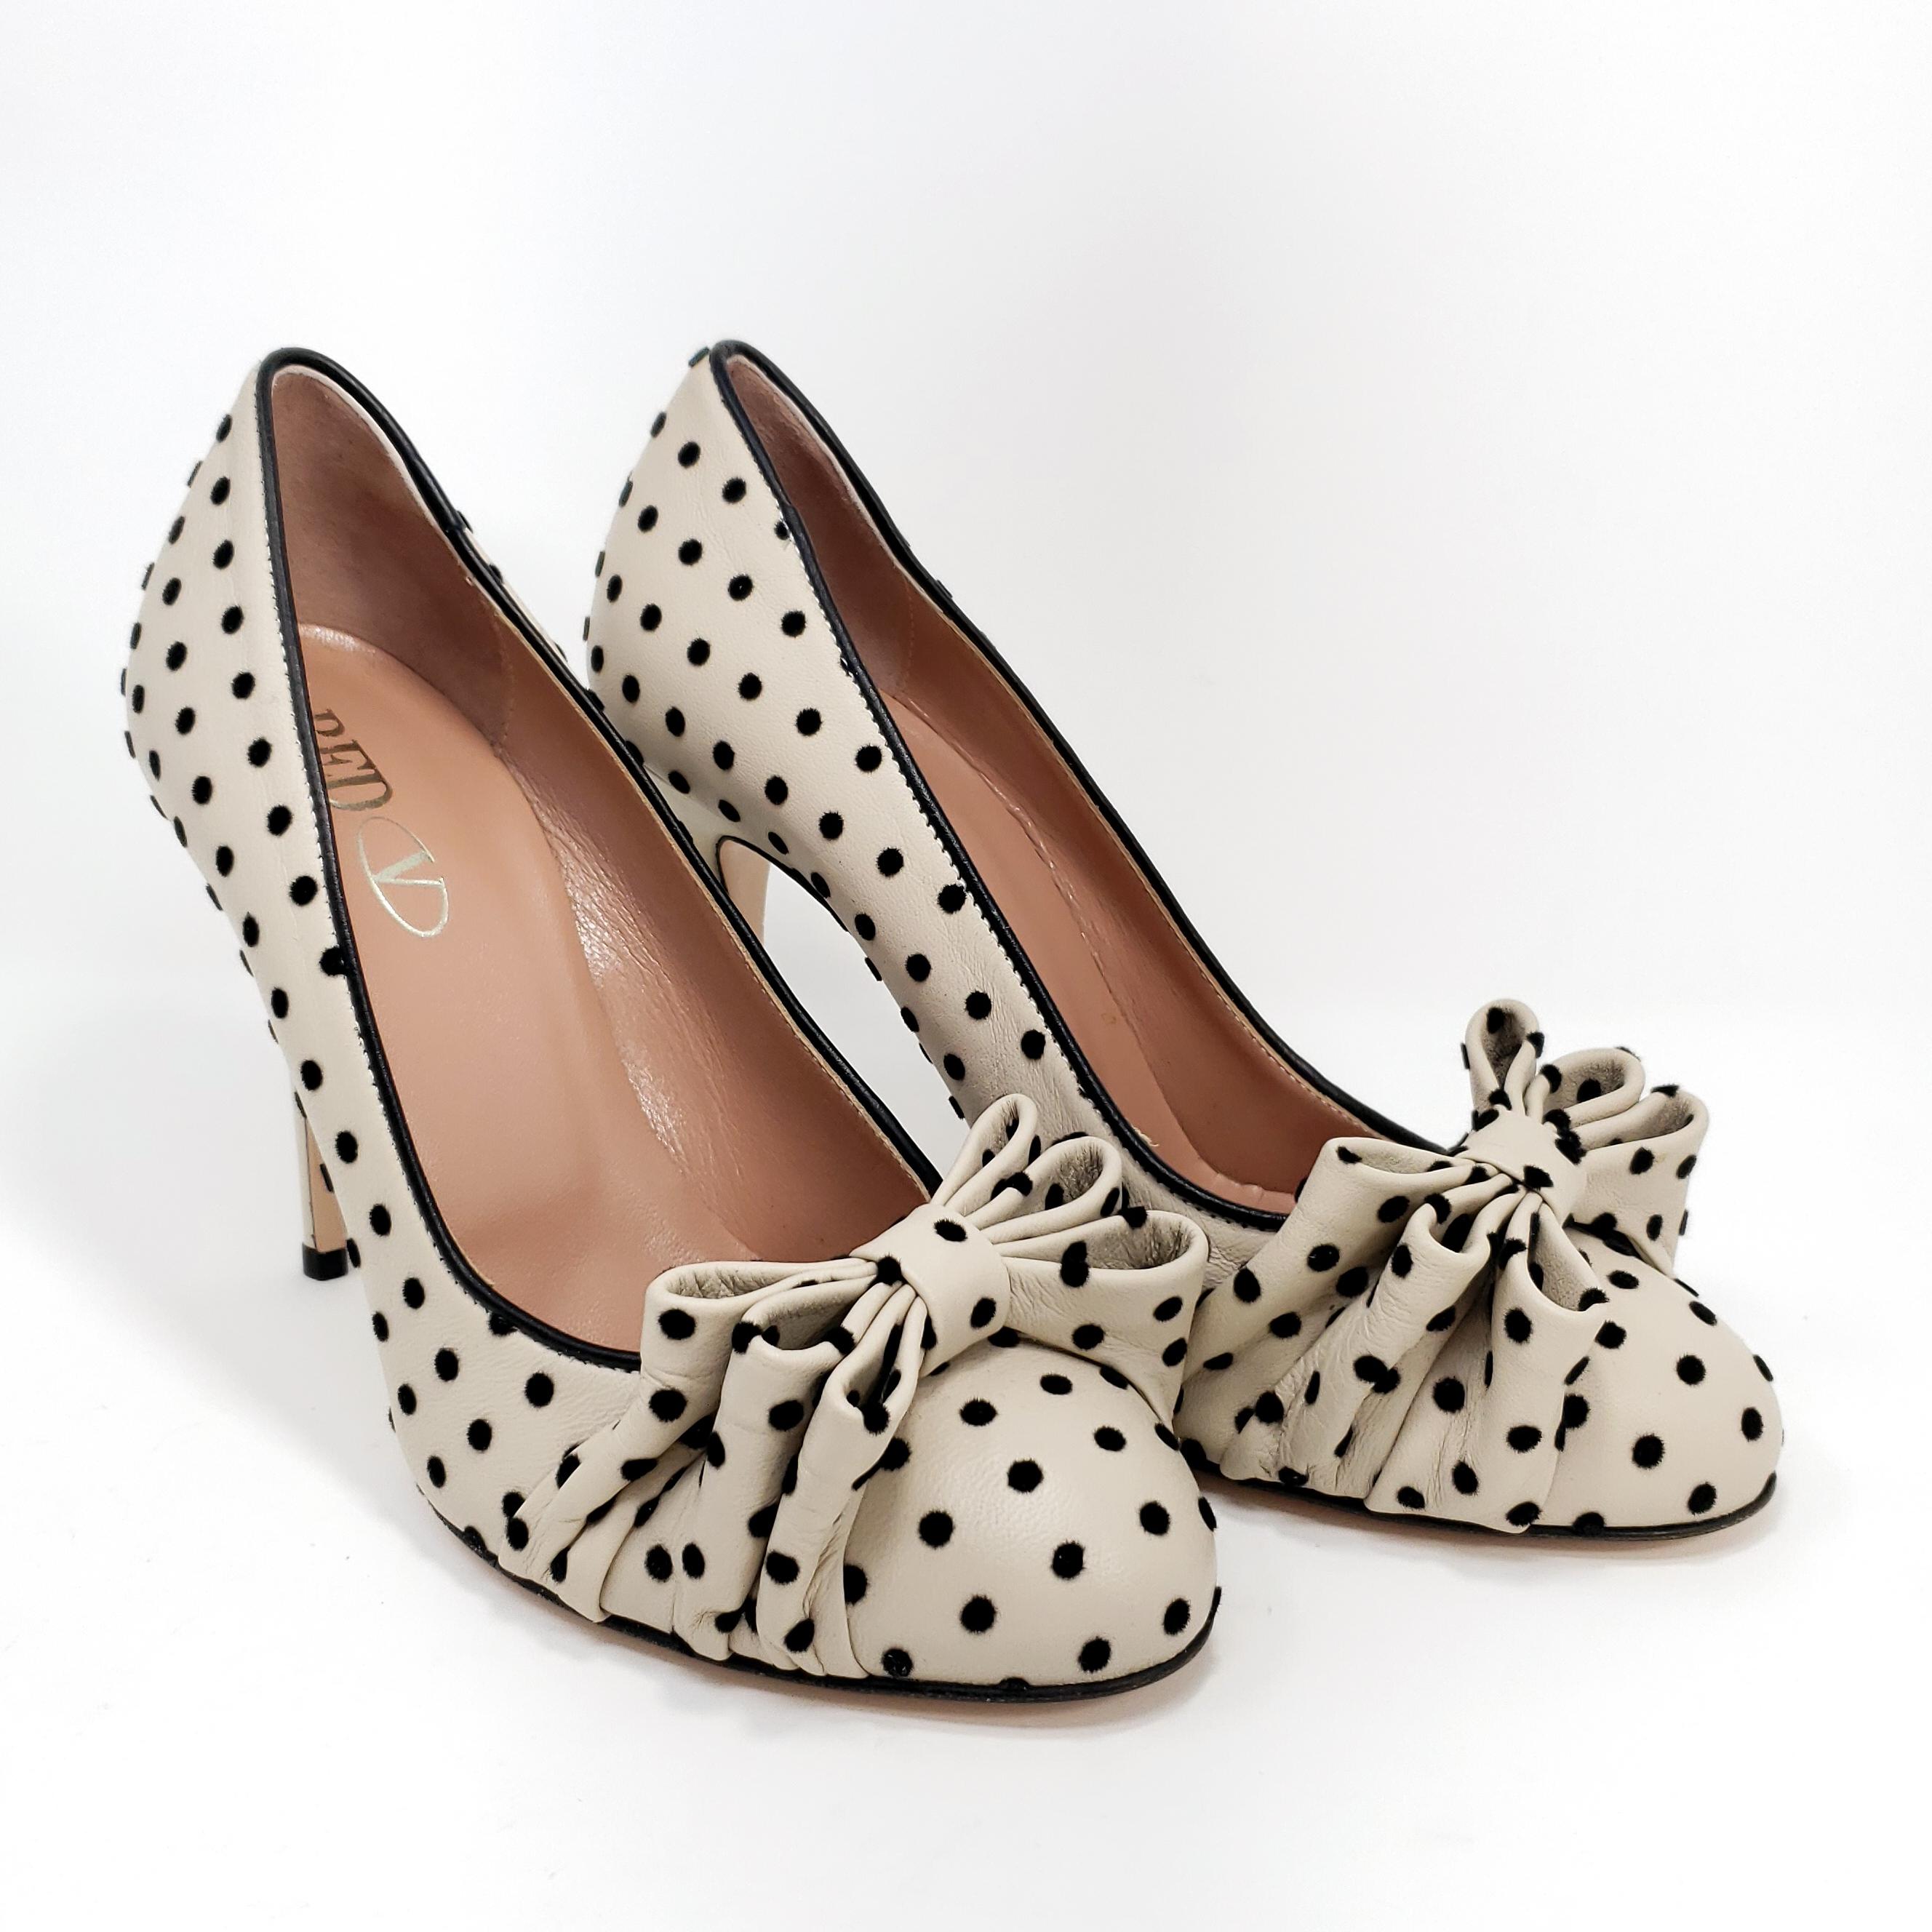 polka dot heels with bow